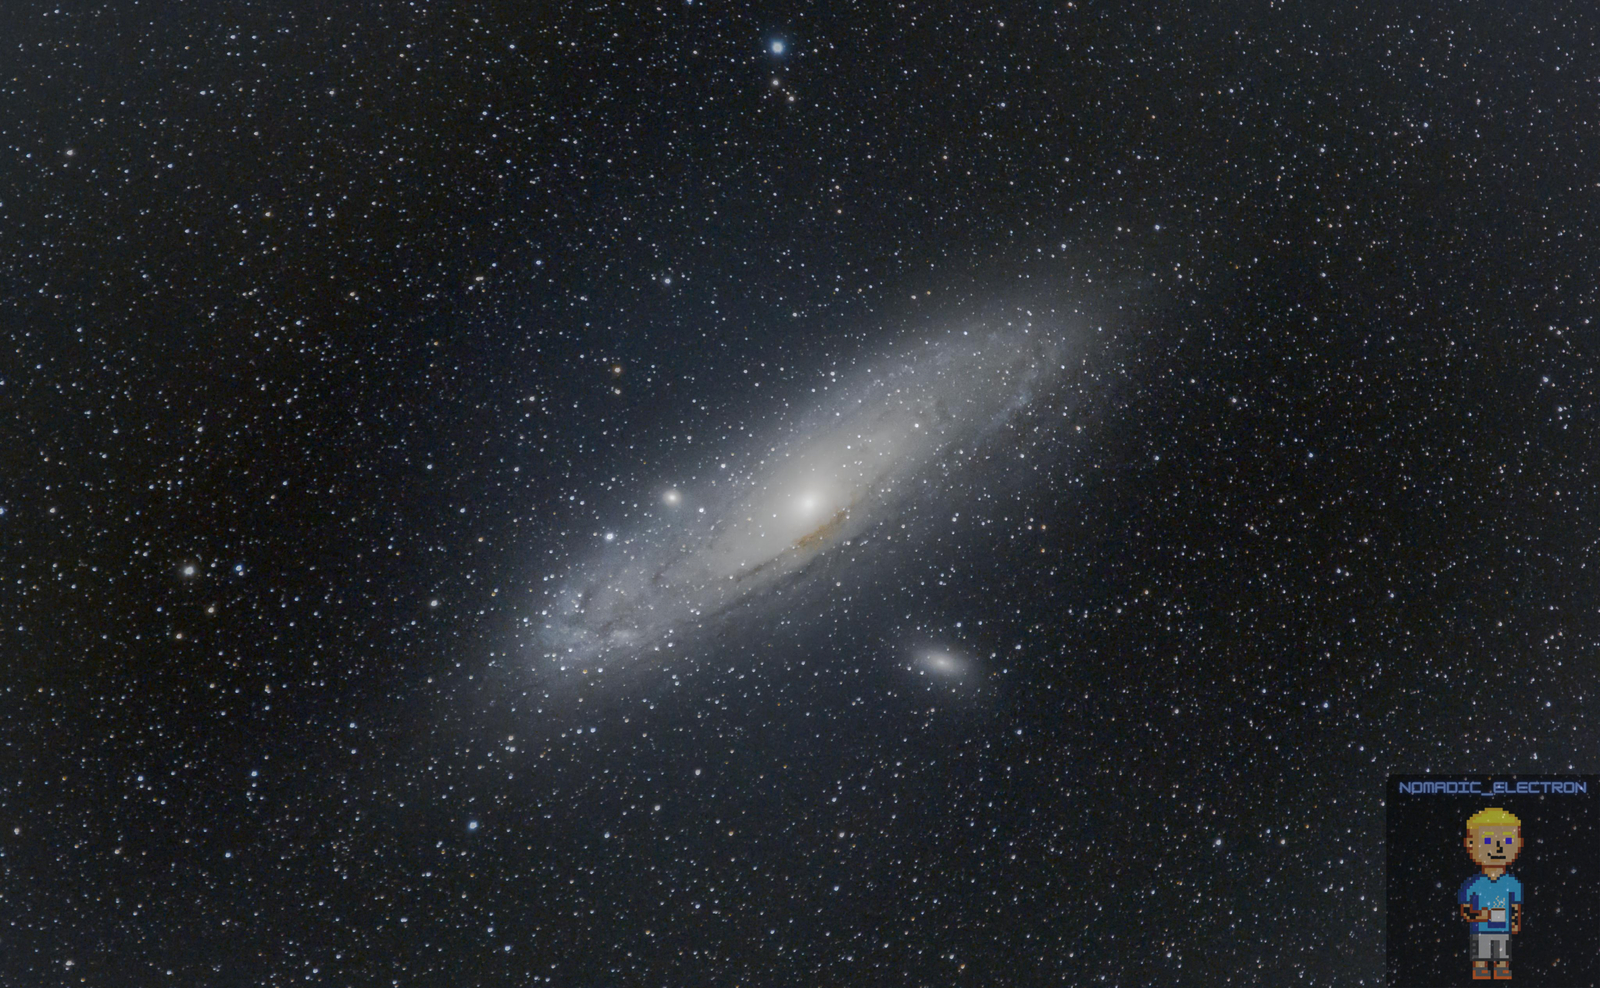 M31 Andromeda Galaxy and M32 Galaxy